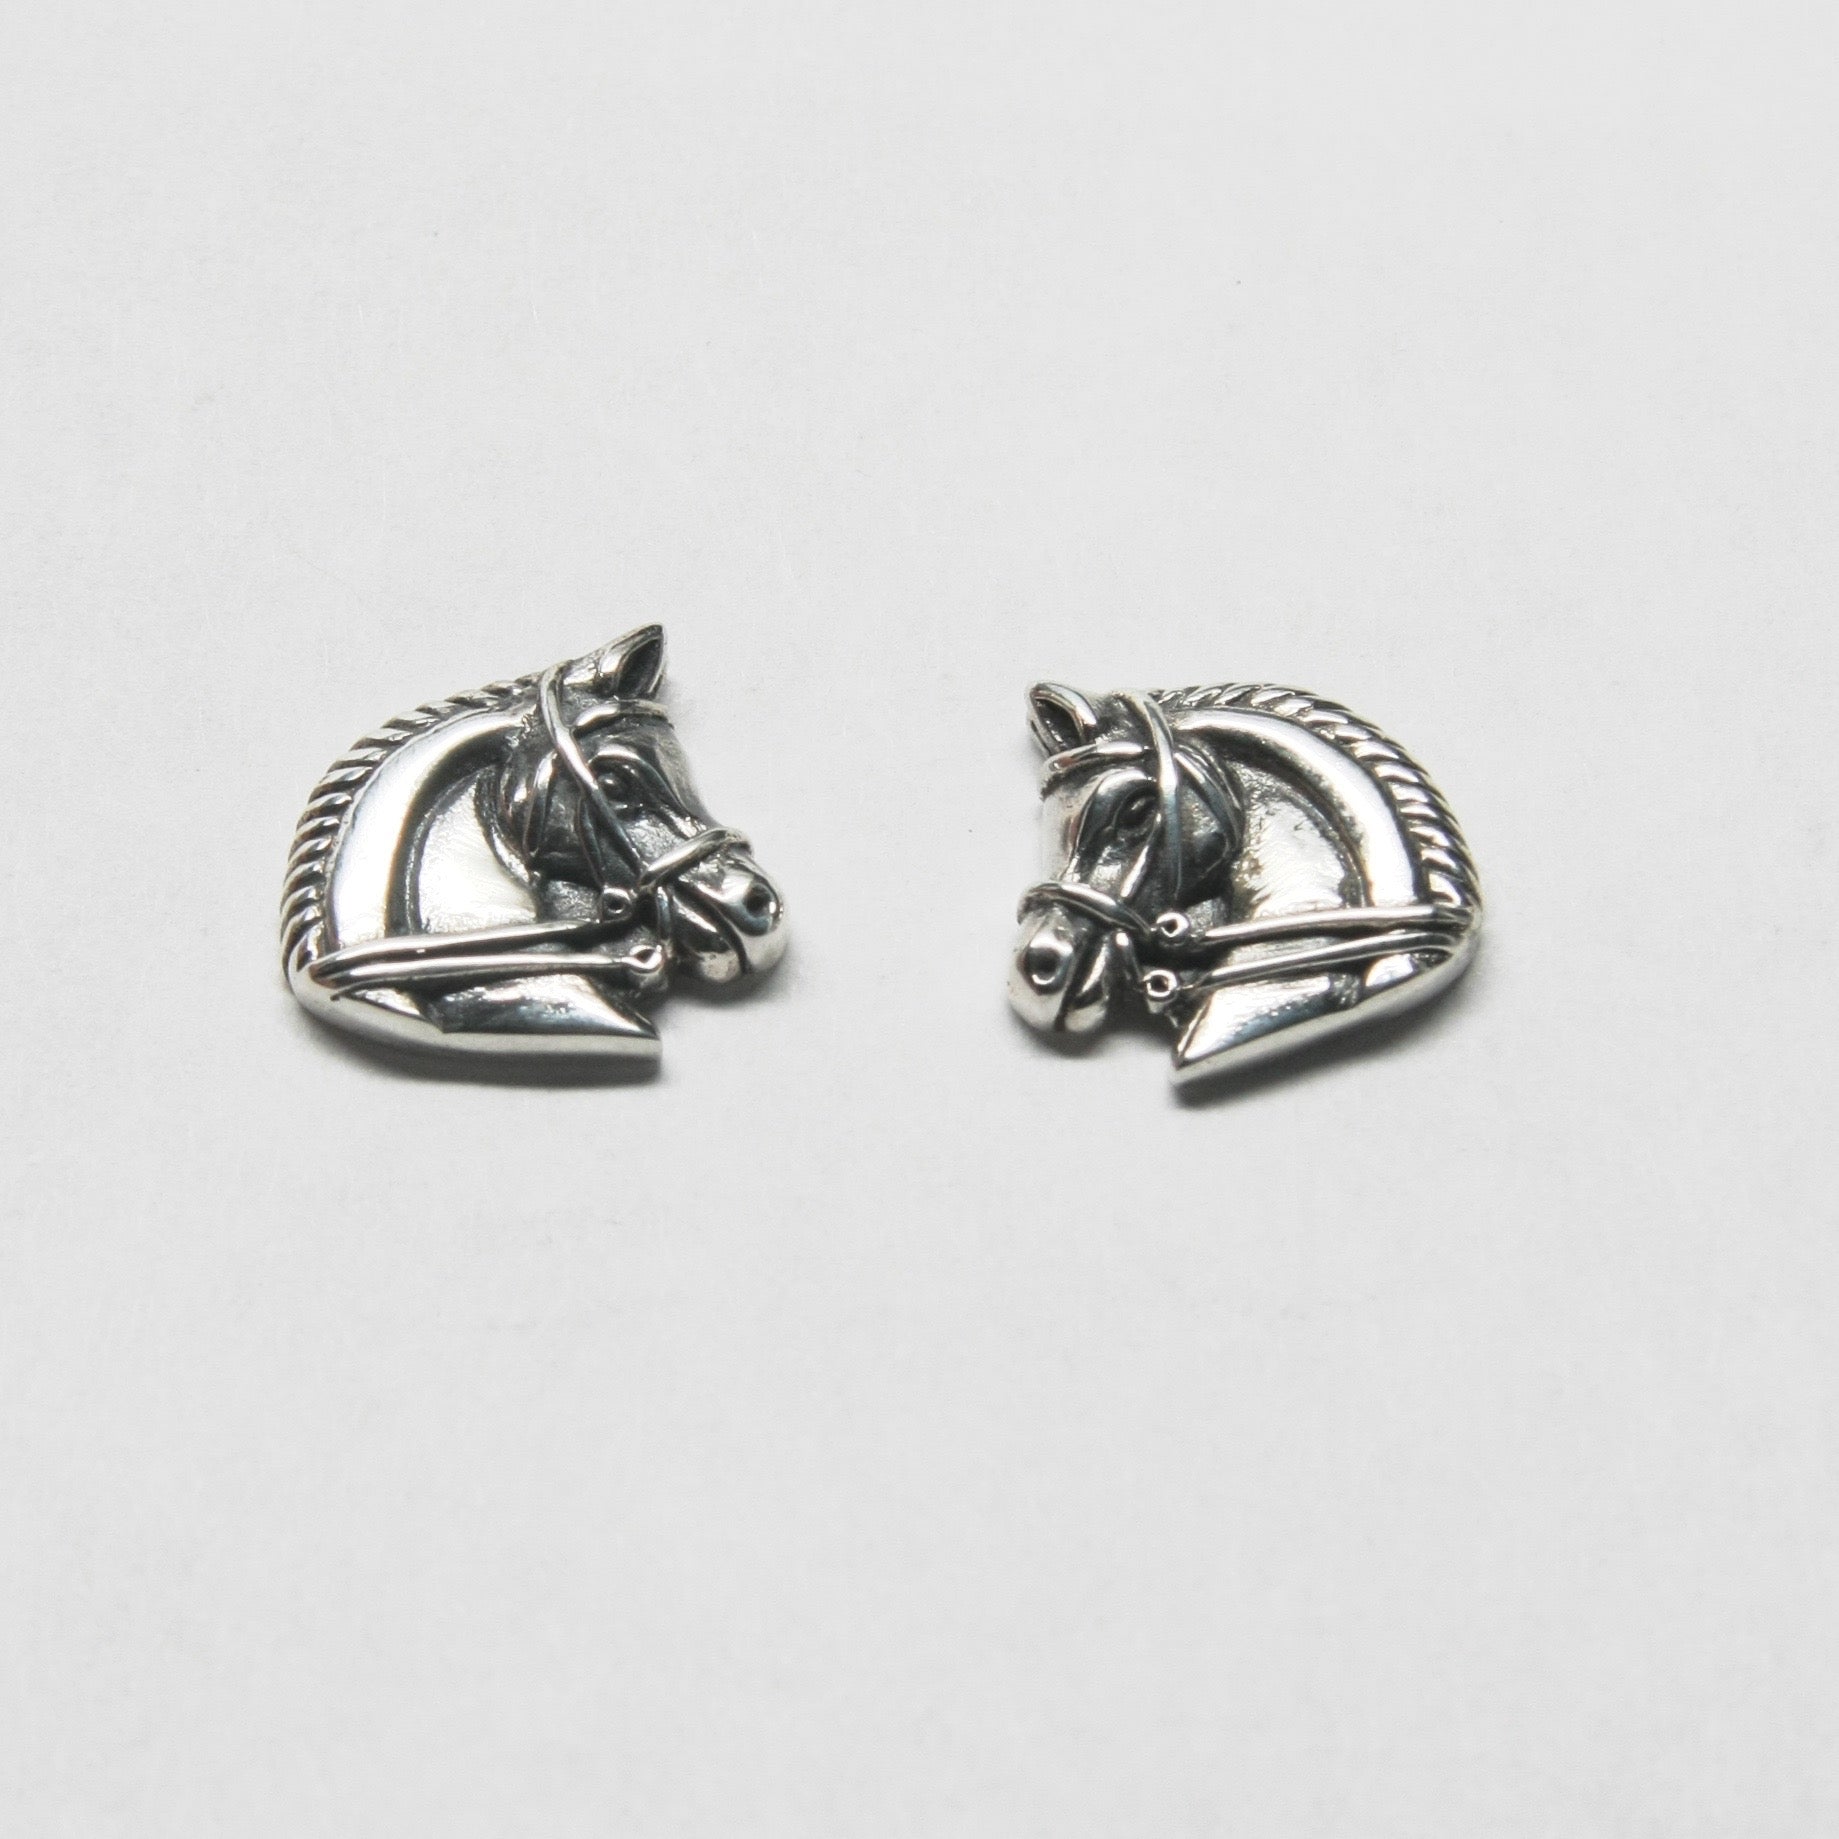 Equestrian dressage horse head earrings